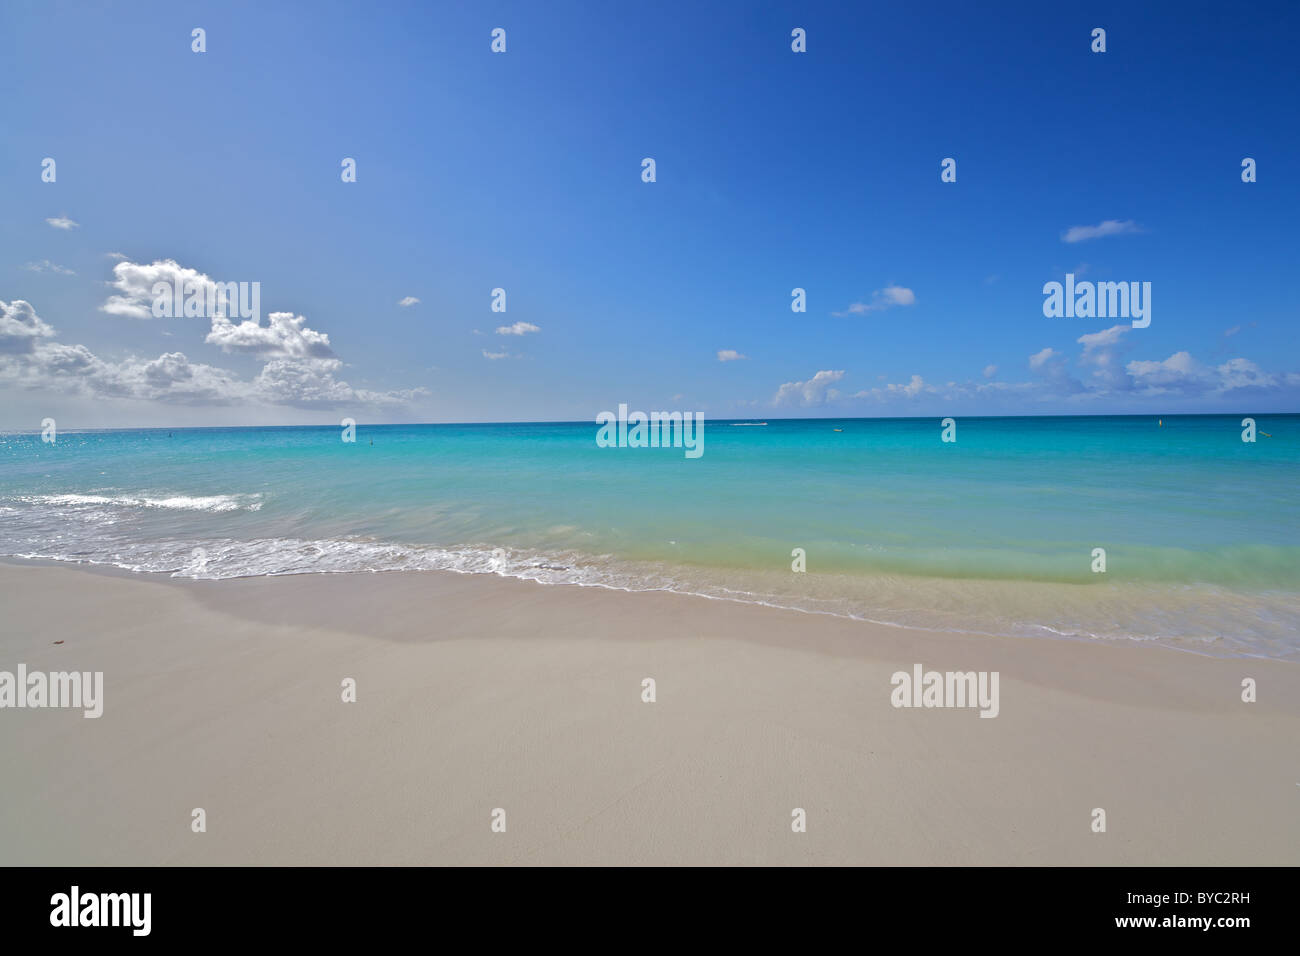 Powdery White Sandy Beach of Aruba Stock Photo - Alamy